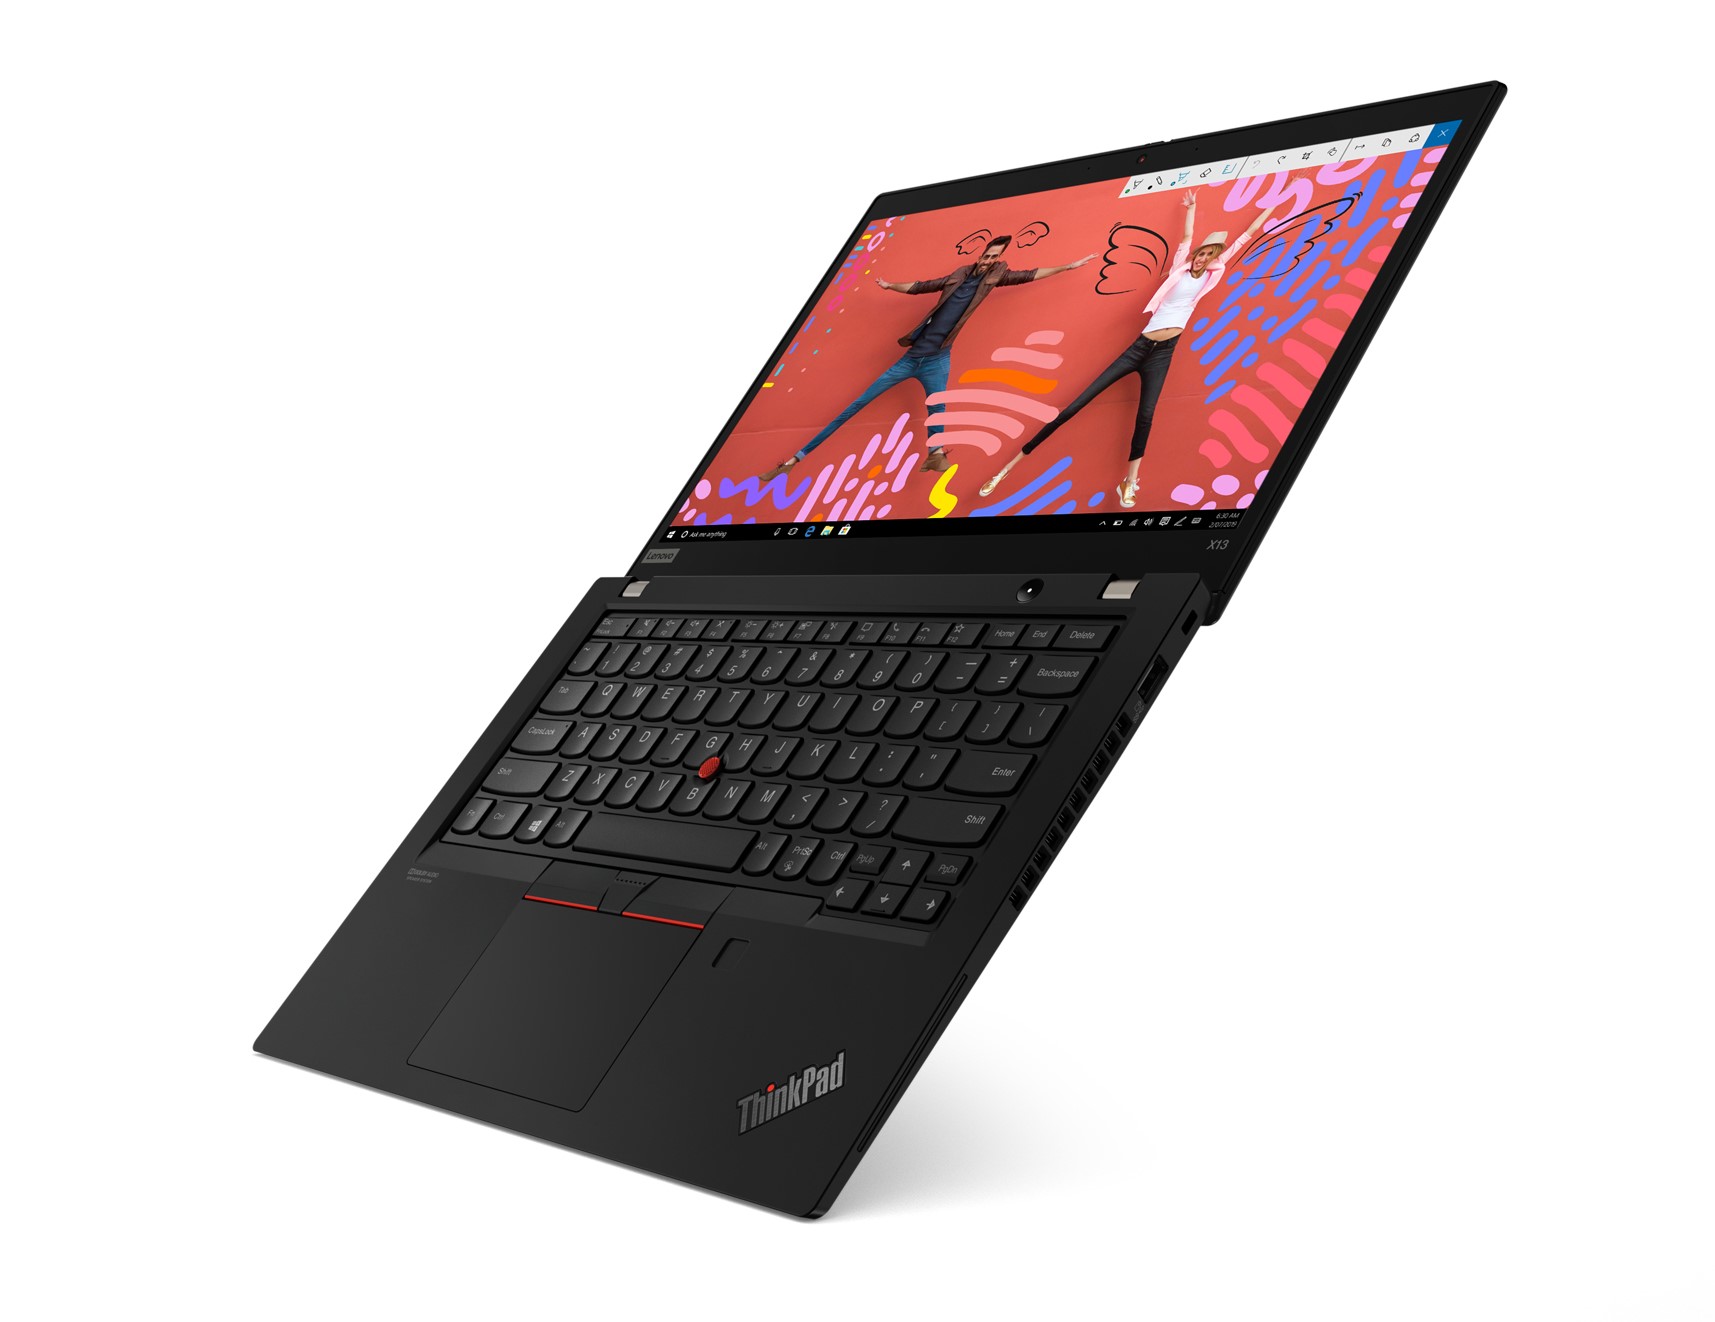 Lenovo ra mắt ThinkPad X13 giúp nâng cao hiệu quả hoạt động cho doanh nghiệp - 2